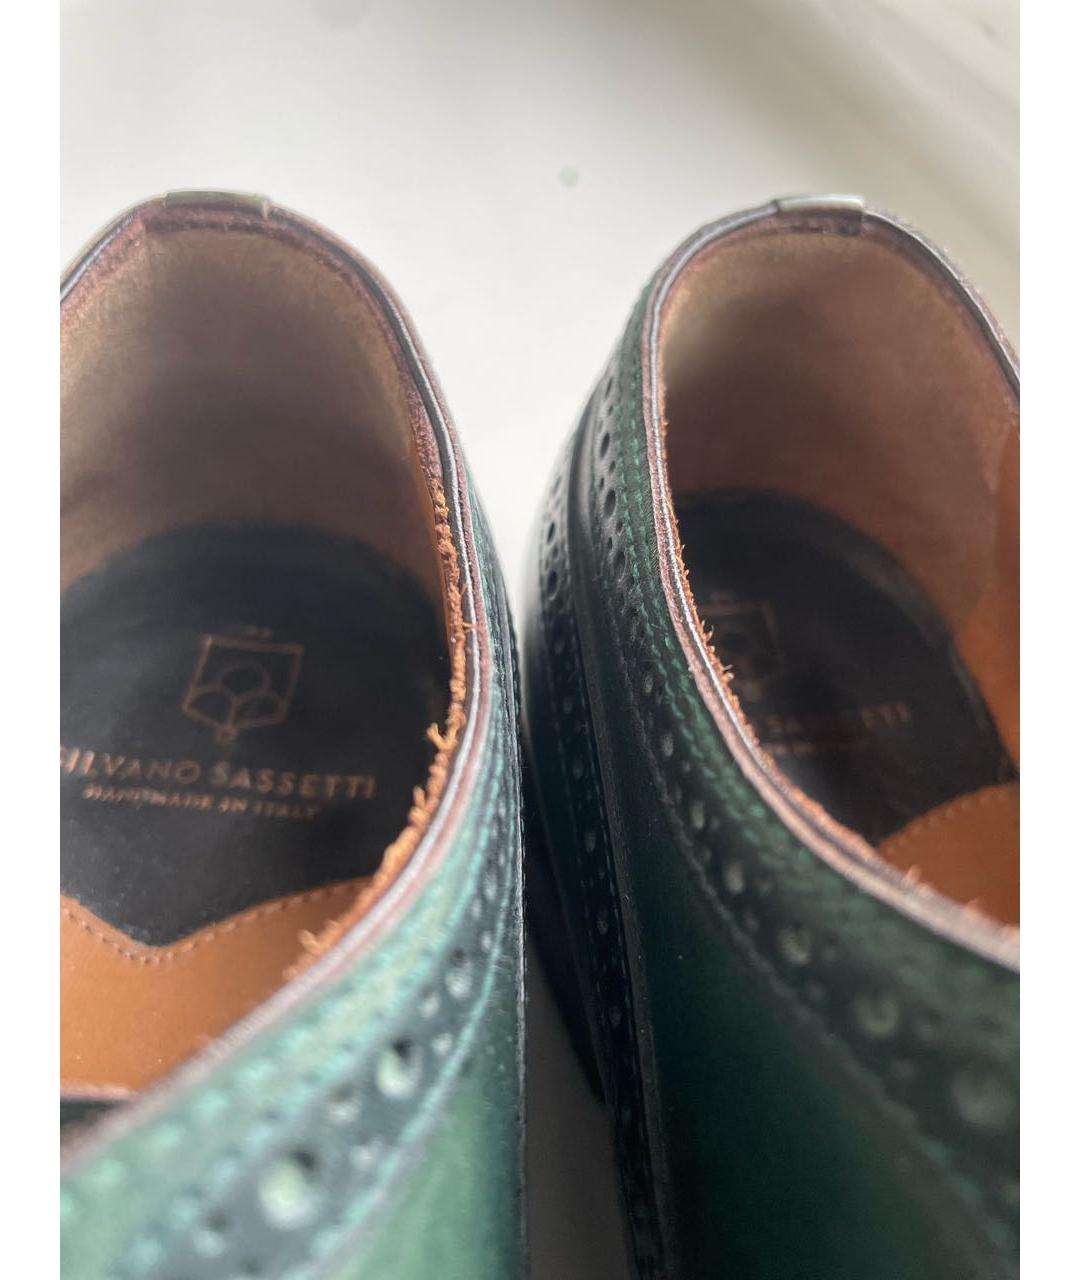 SILVANO SASSETTI Зеленые кожаные туфли, фото 4